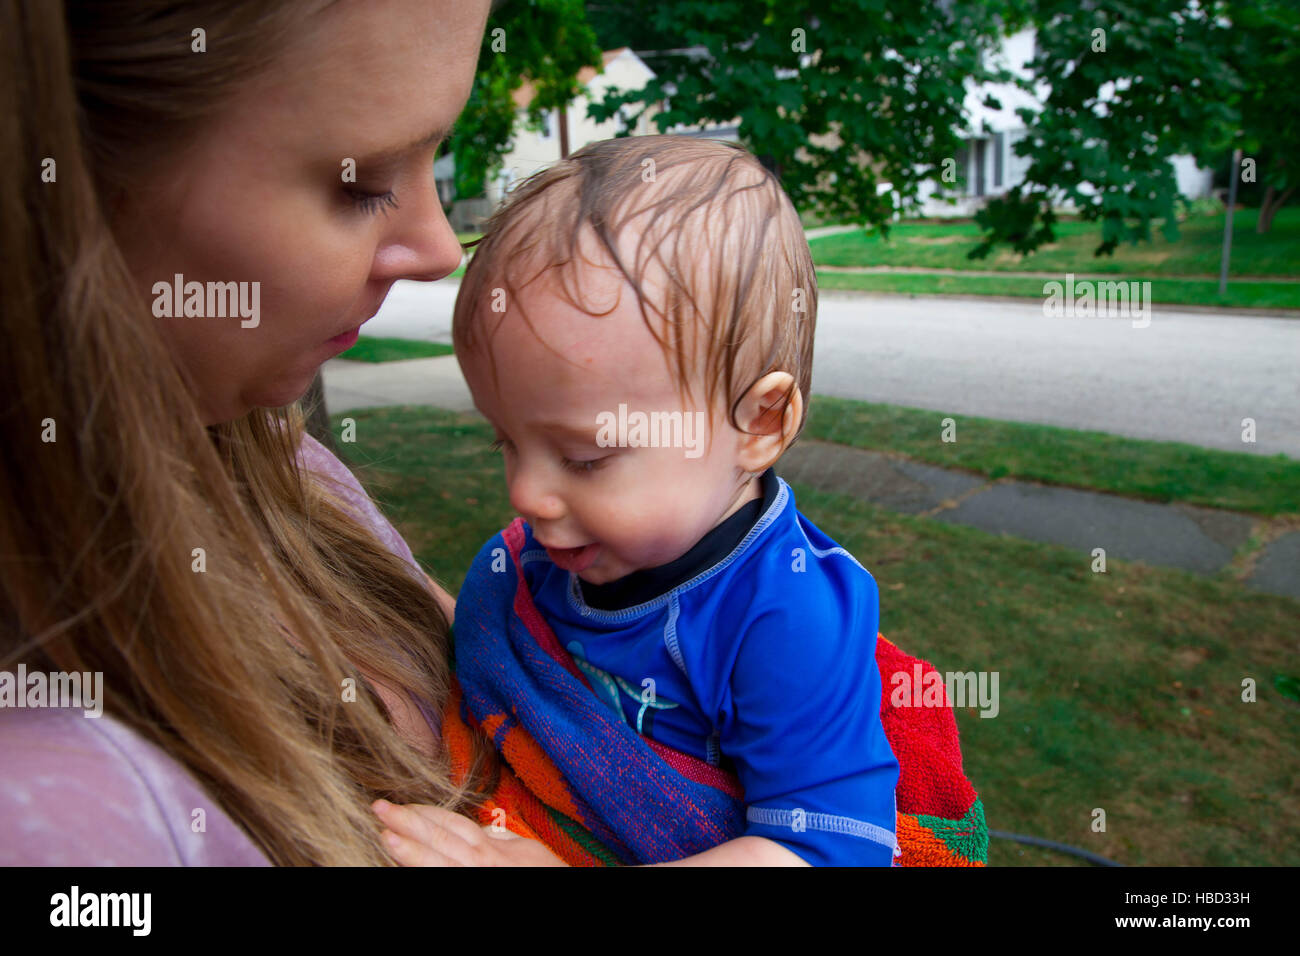 Kaukasischen jungen durch seine Mutter nach dem Spiel mit einem Wasser-Sprenger in seinem vorderen Rasen im Sommer statt Stockfoto